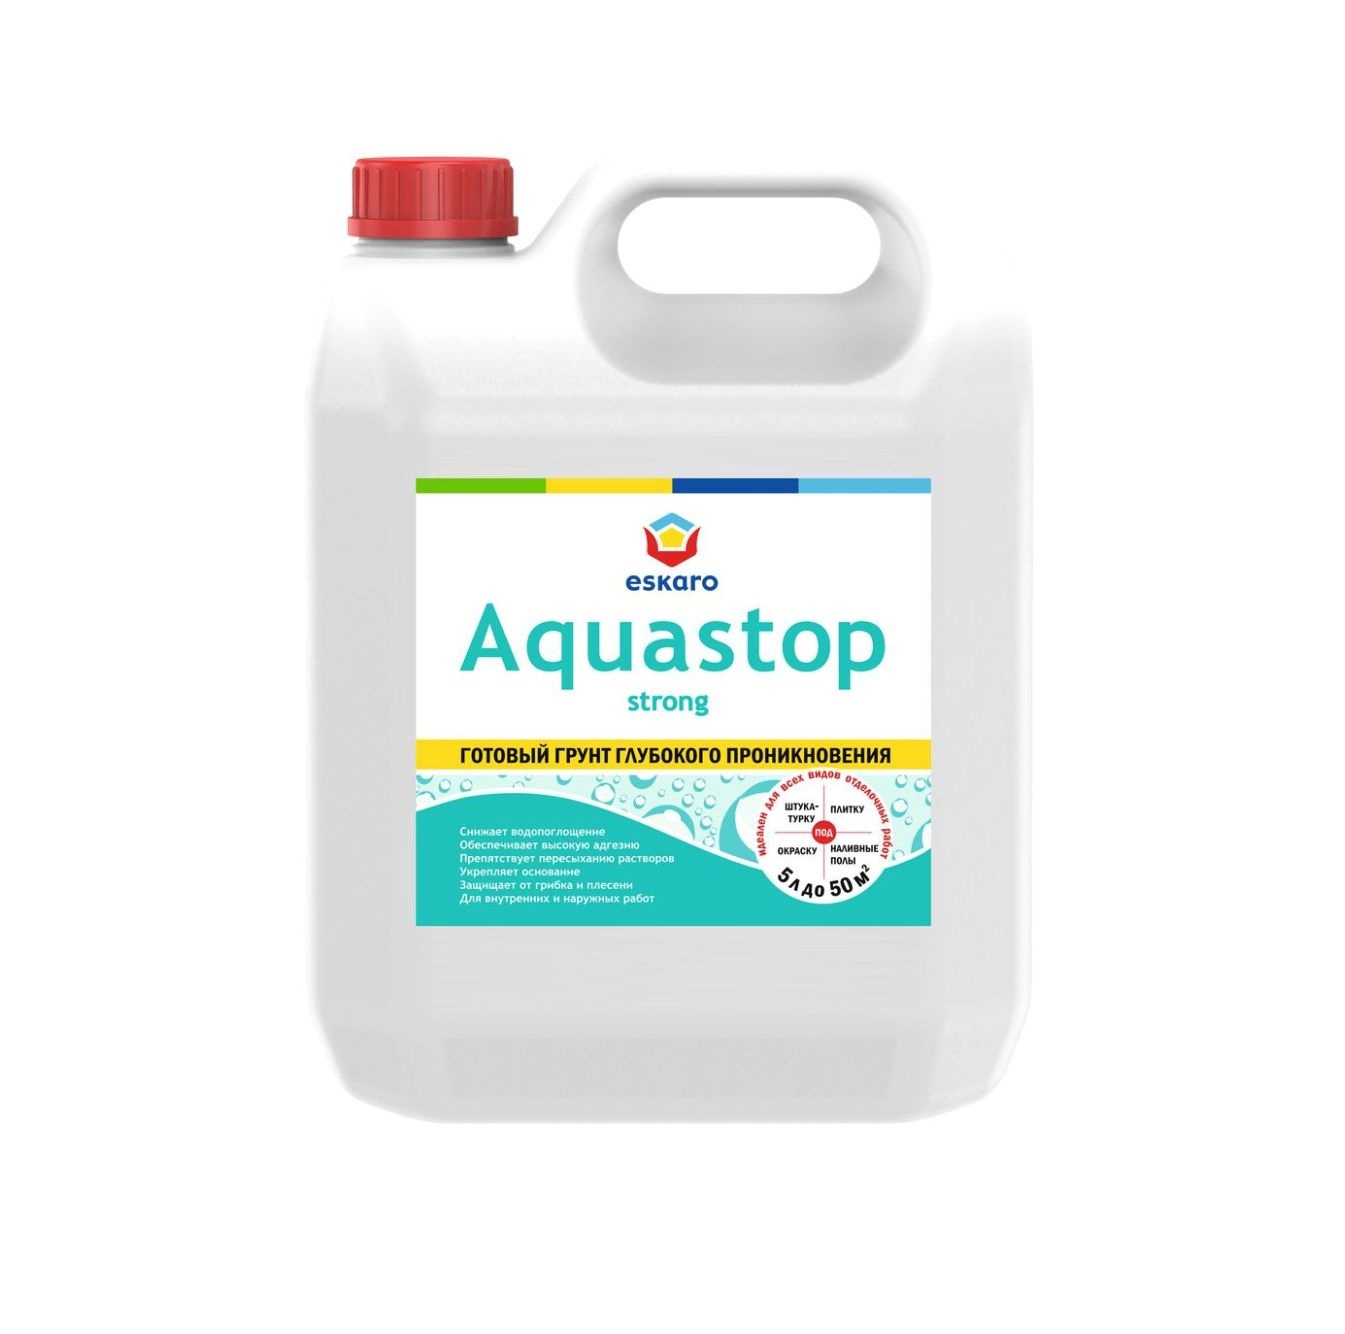 Грунт Eskaro Aquastop Strong 5л EAG027 влагоизолирующий грунт концентрат для наружных и внутренних работ ореол